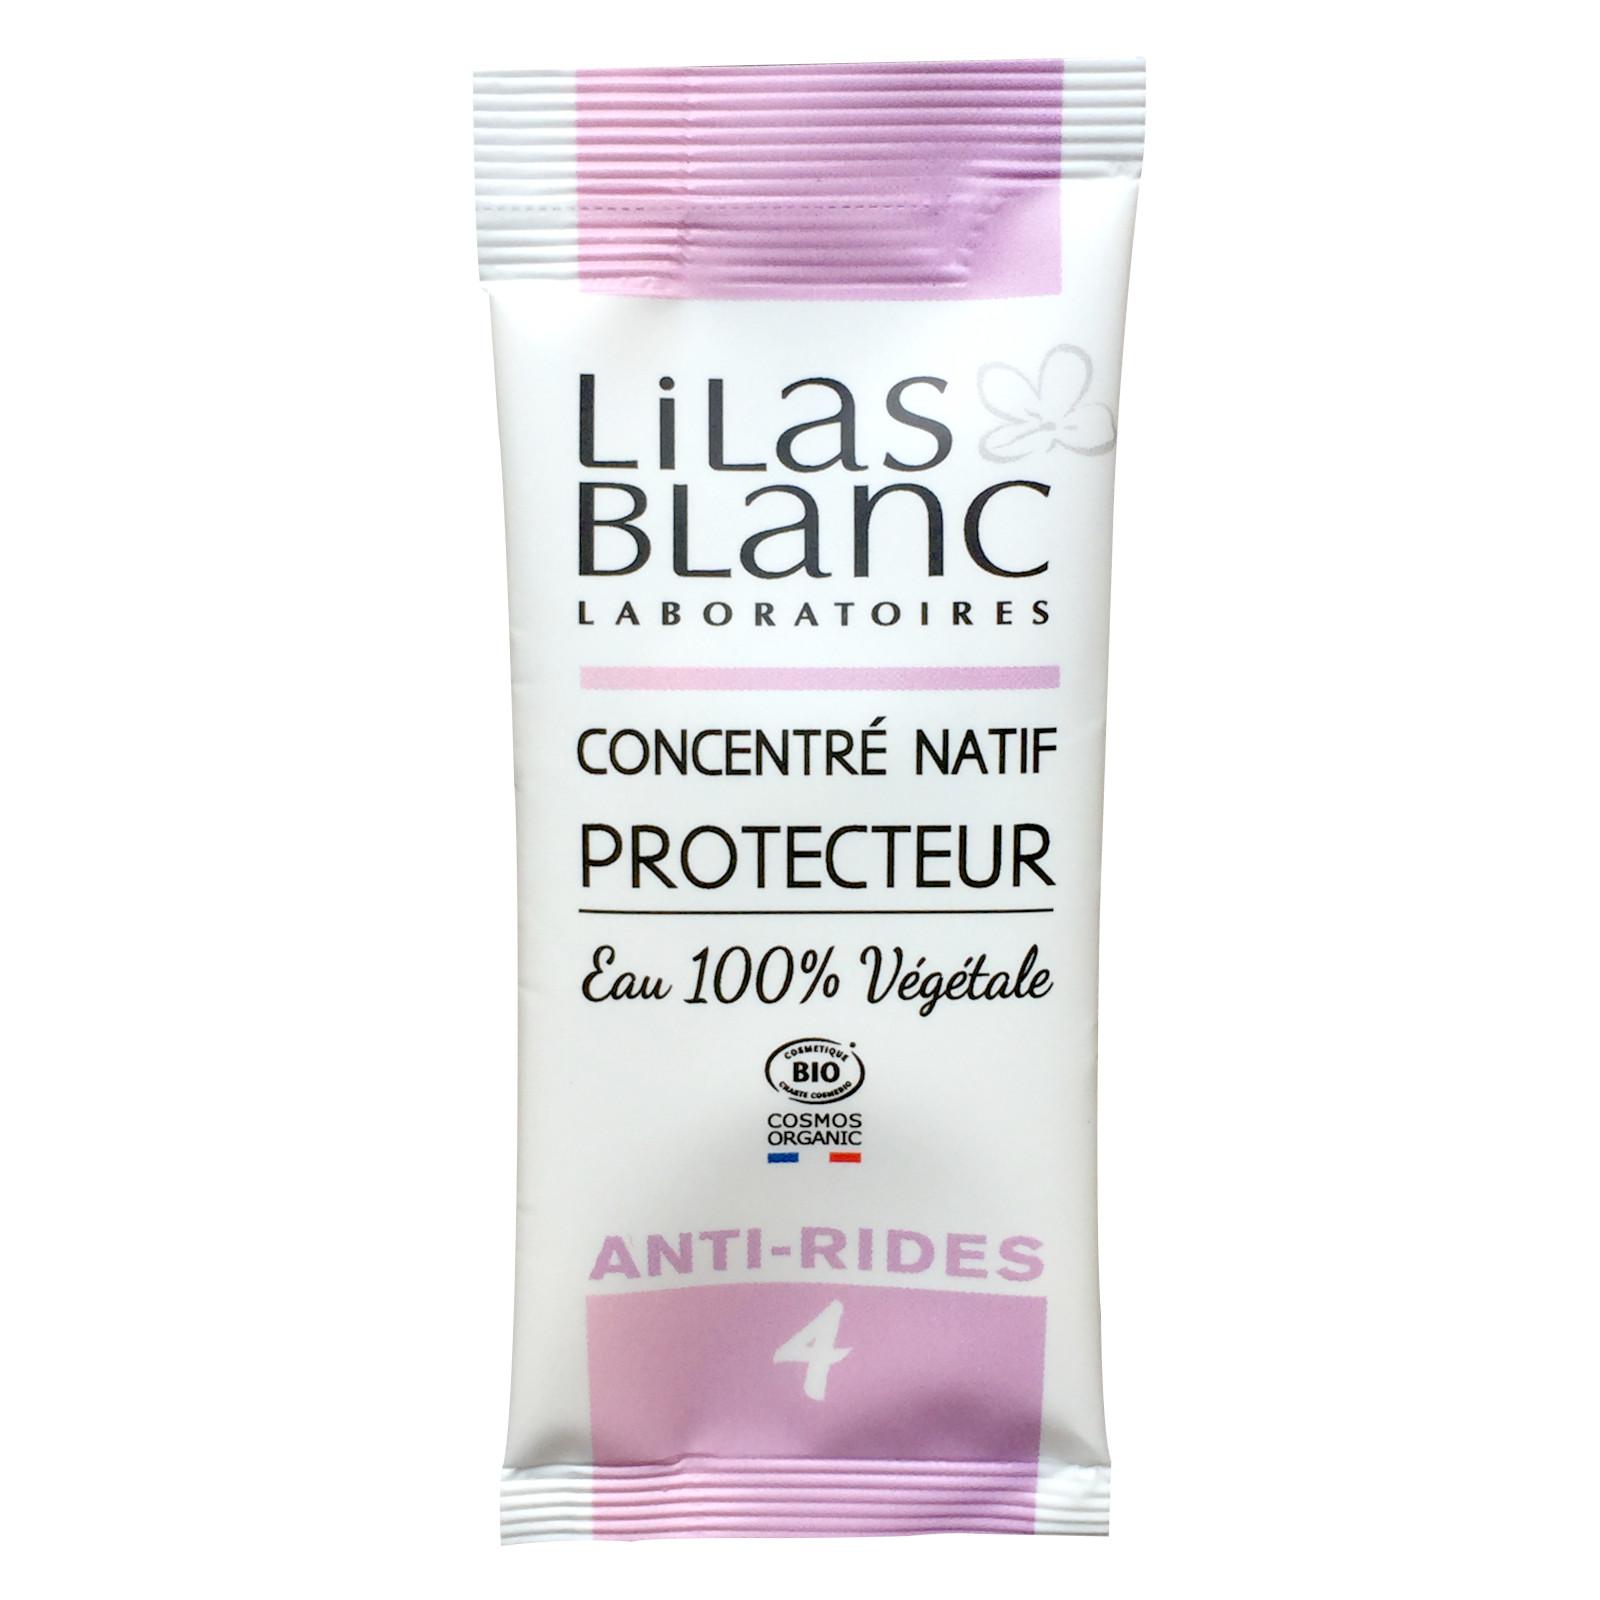 Lilas Blanc Ochranné pleťové sérum proti vráskám 5 ml